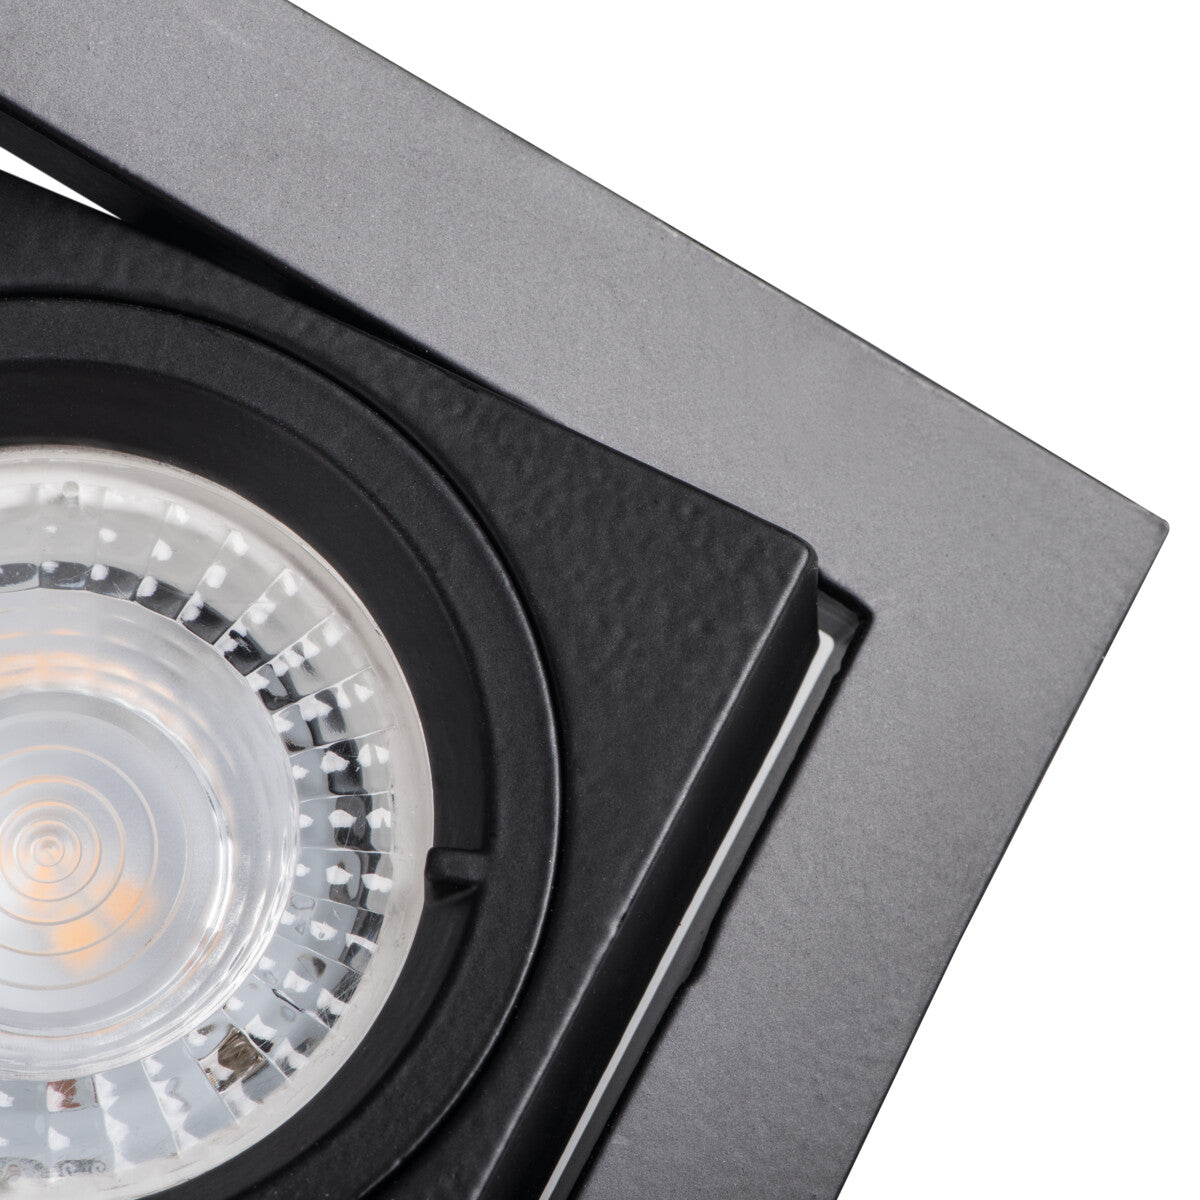 Kanlux ALREN Ceiling Recessed GU10 Spot Down Light Adjustable Tilt Lighting